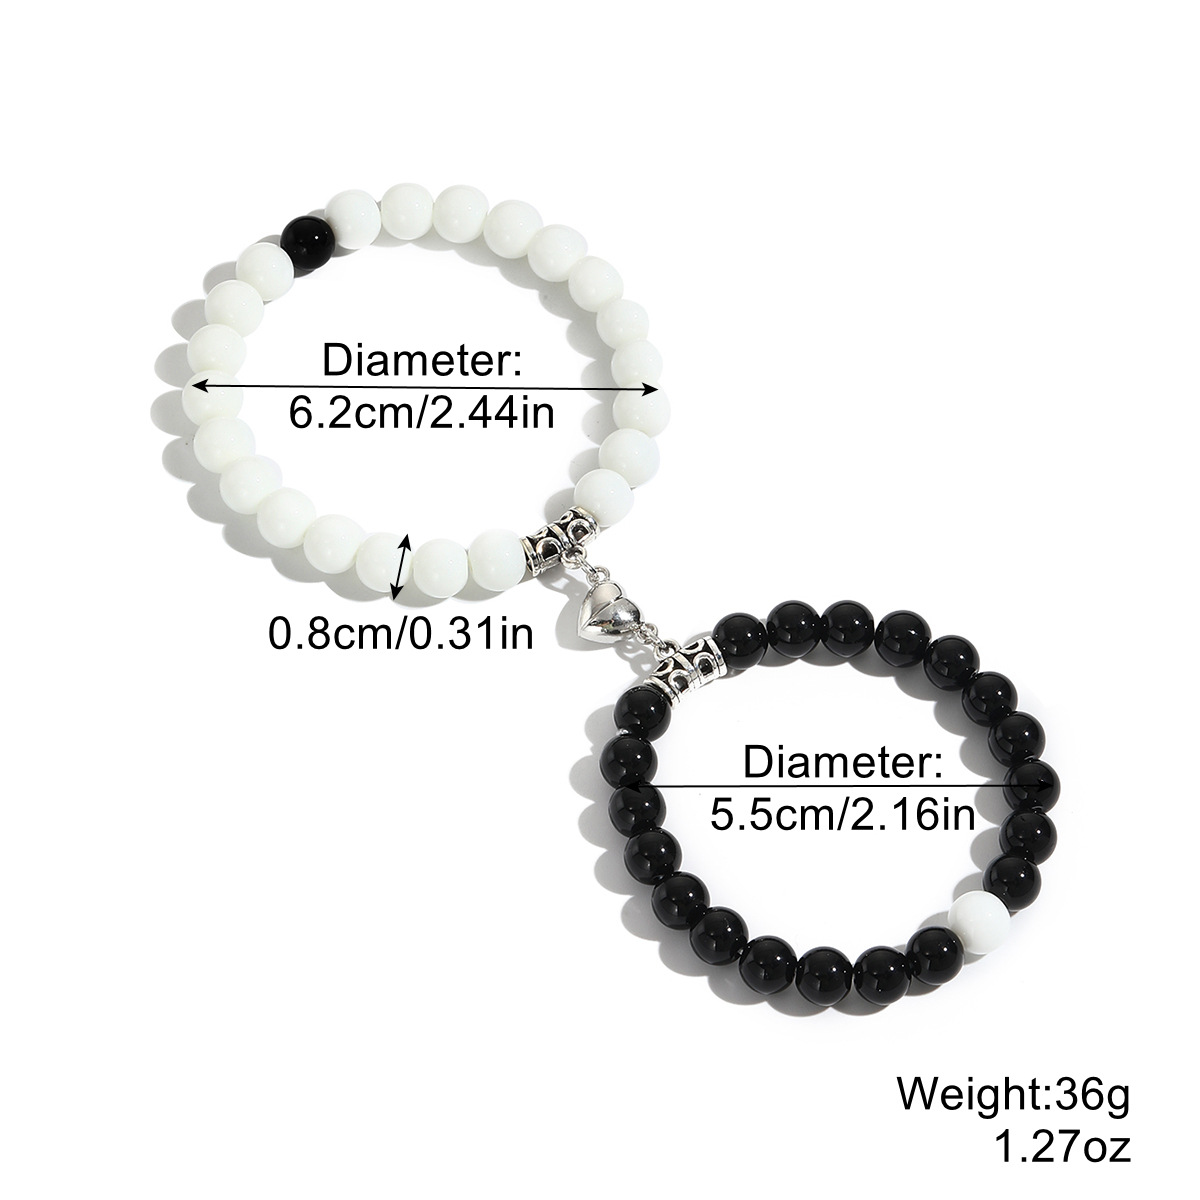 White-black bright beads